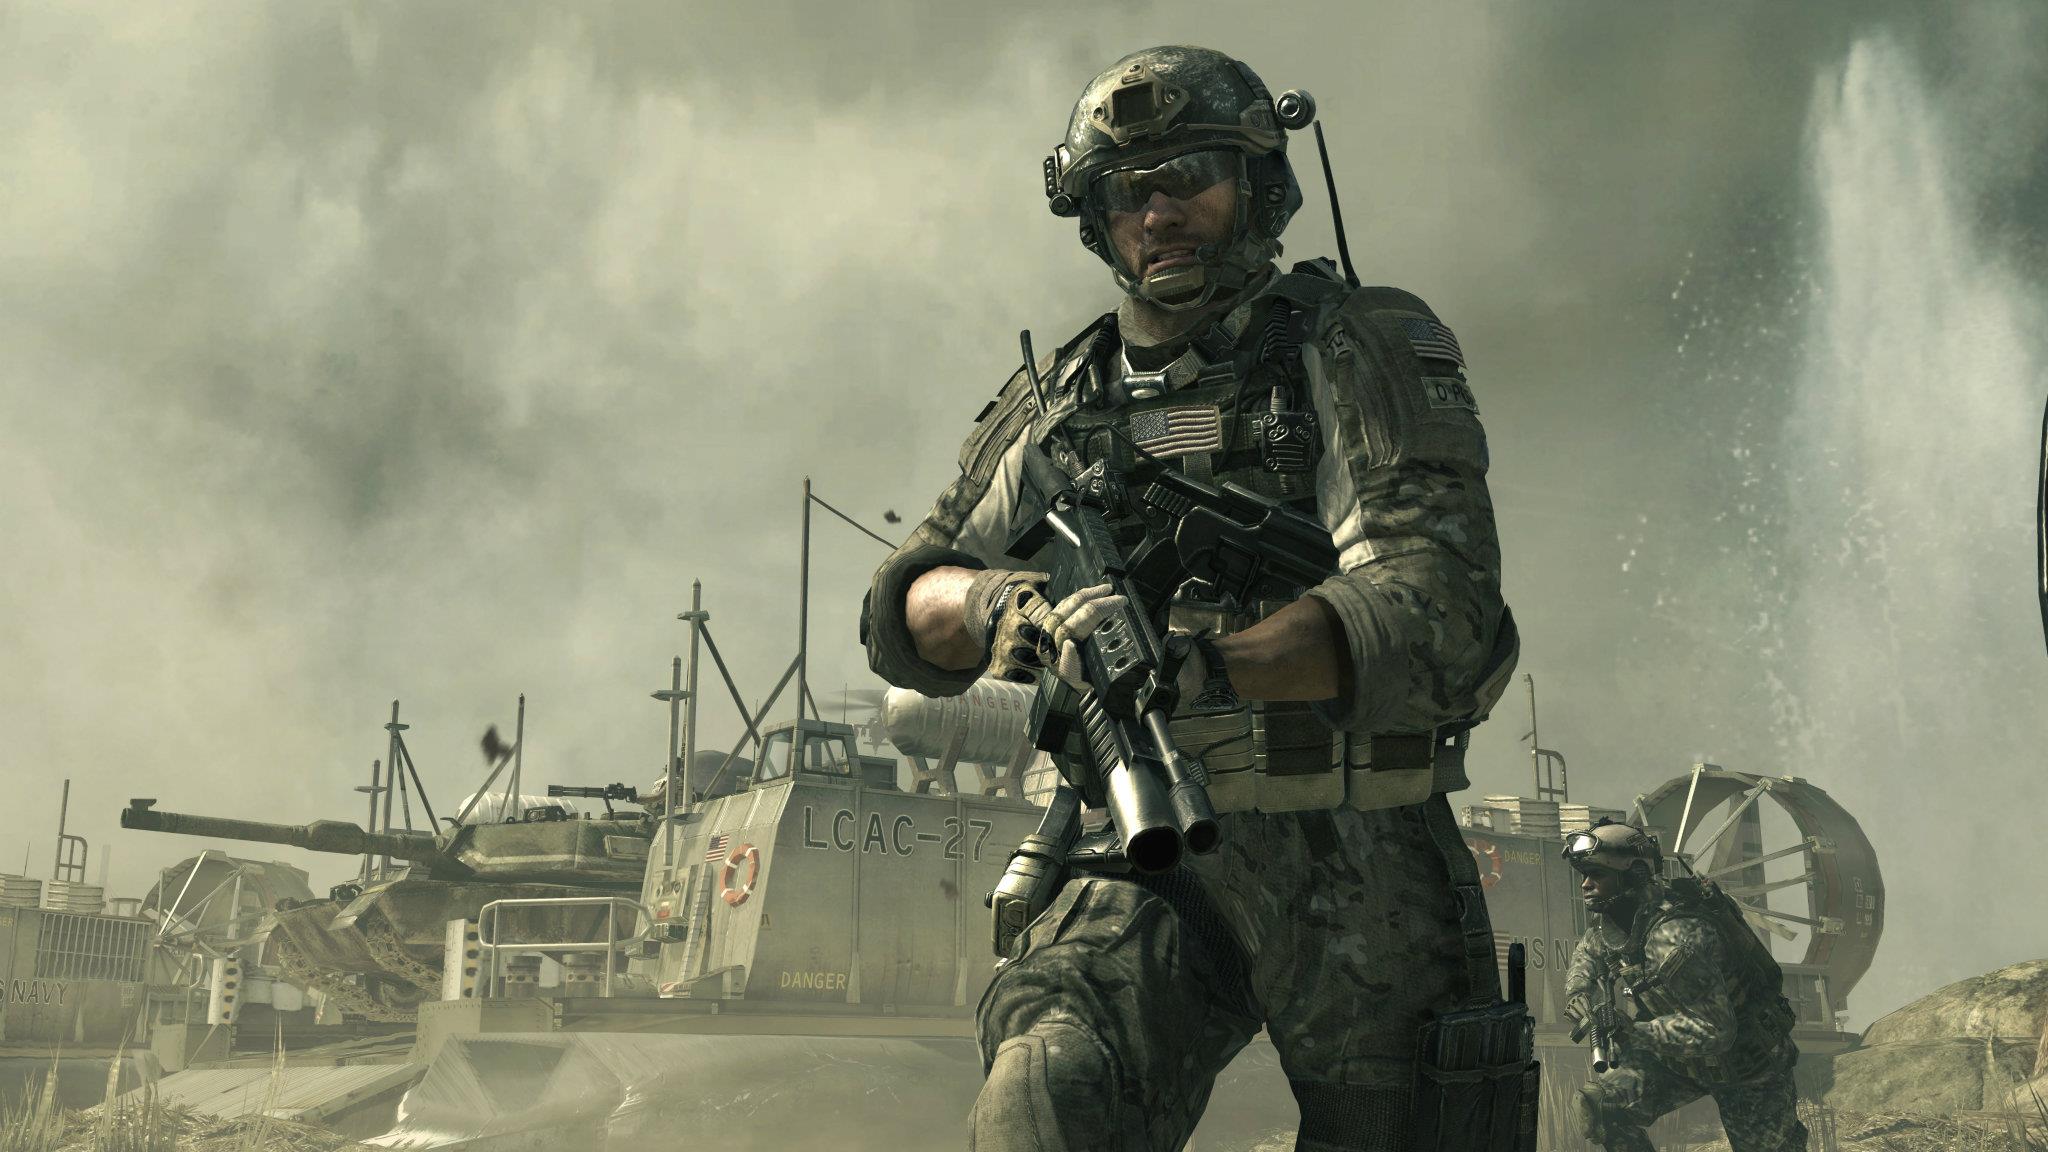 Sandman - COD~Modern Warfare 3 Photo (28030922) - Fanpop